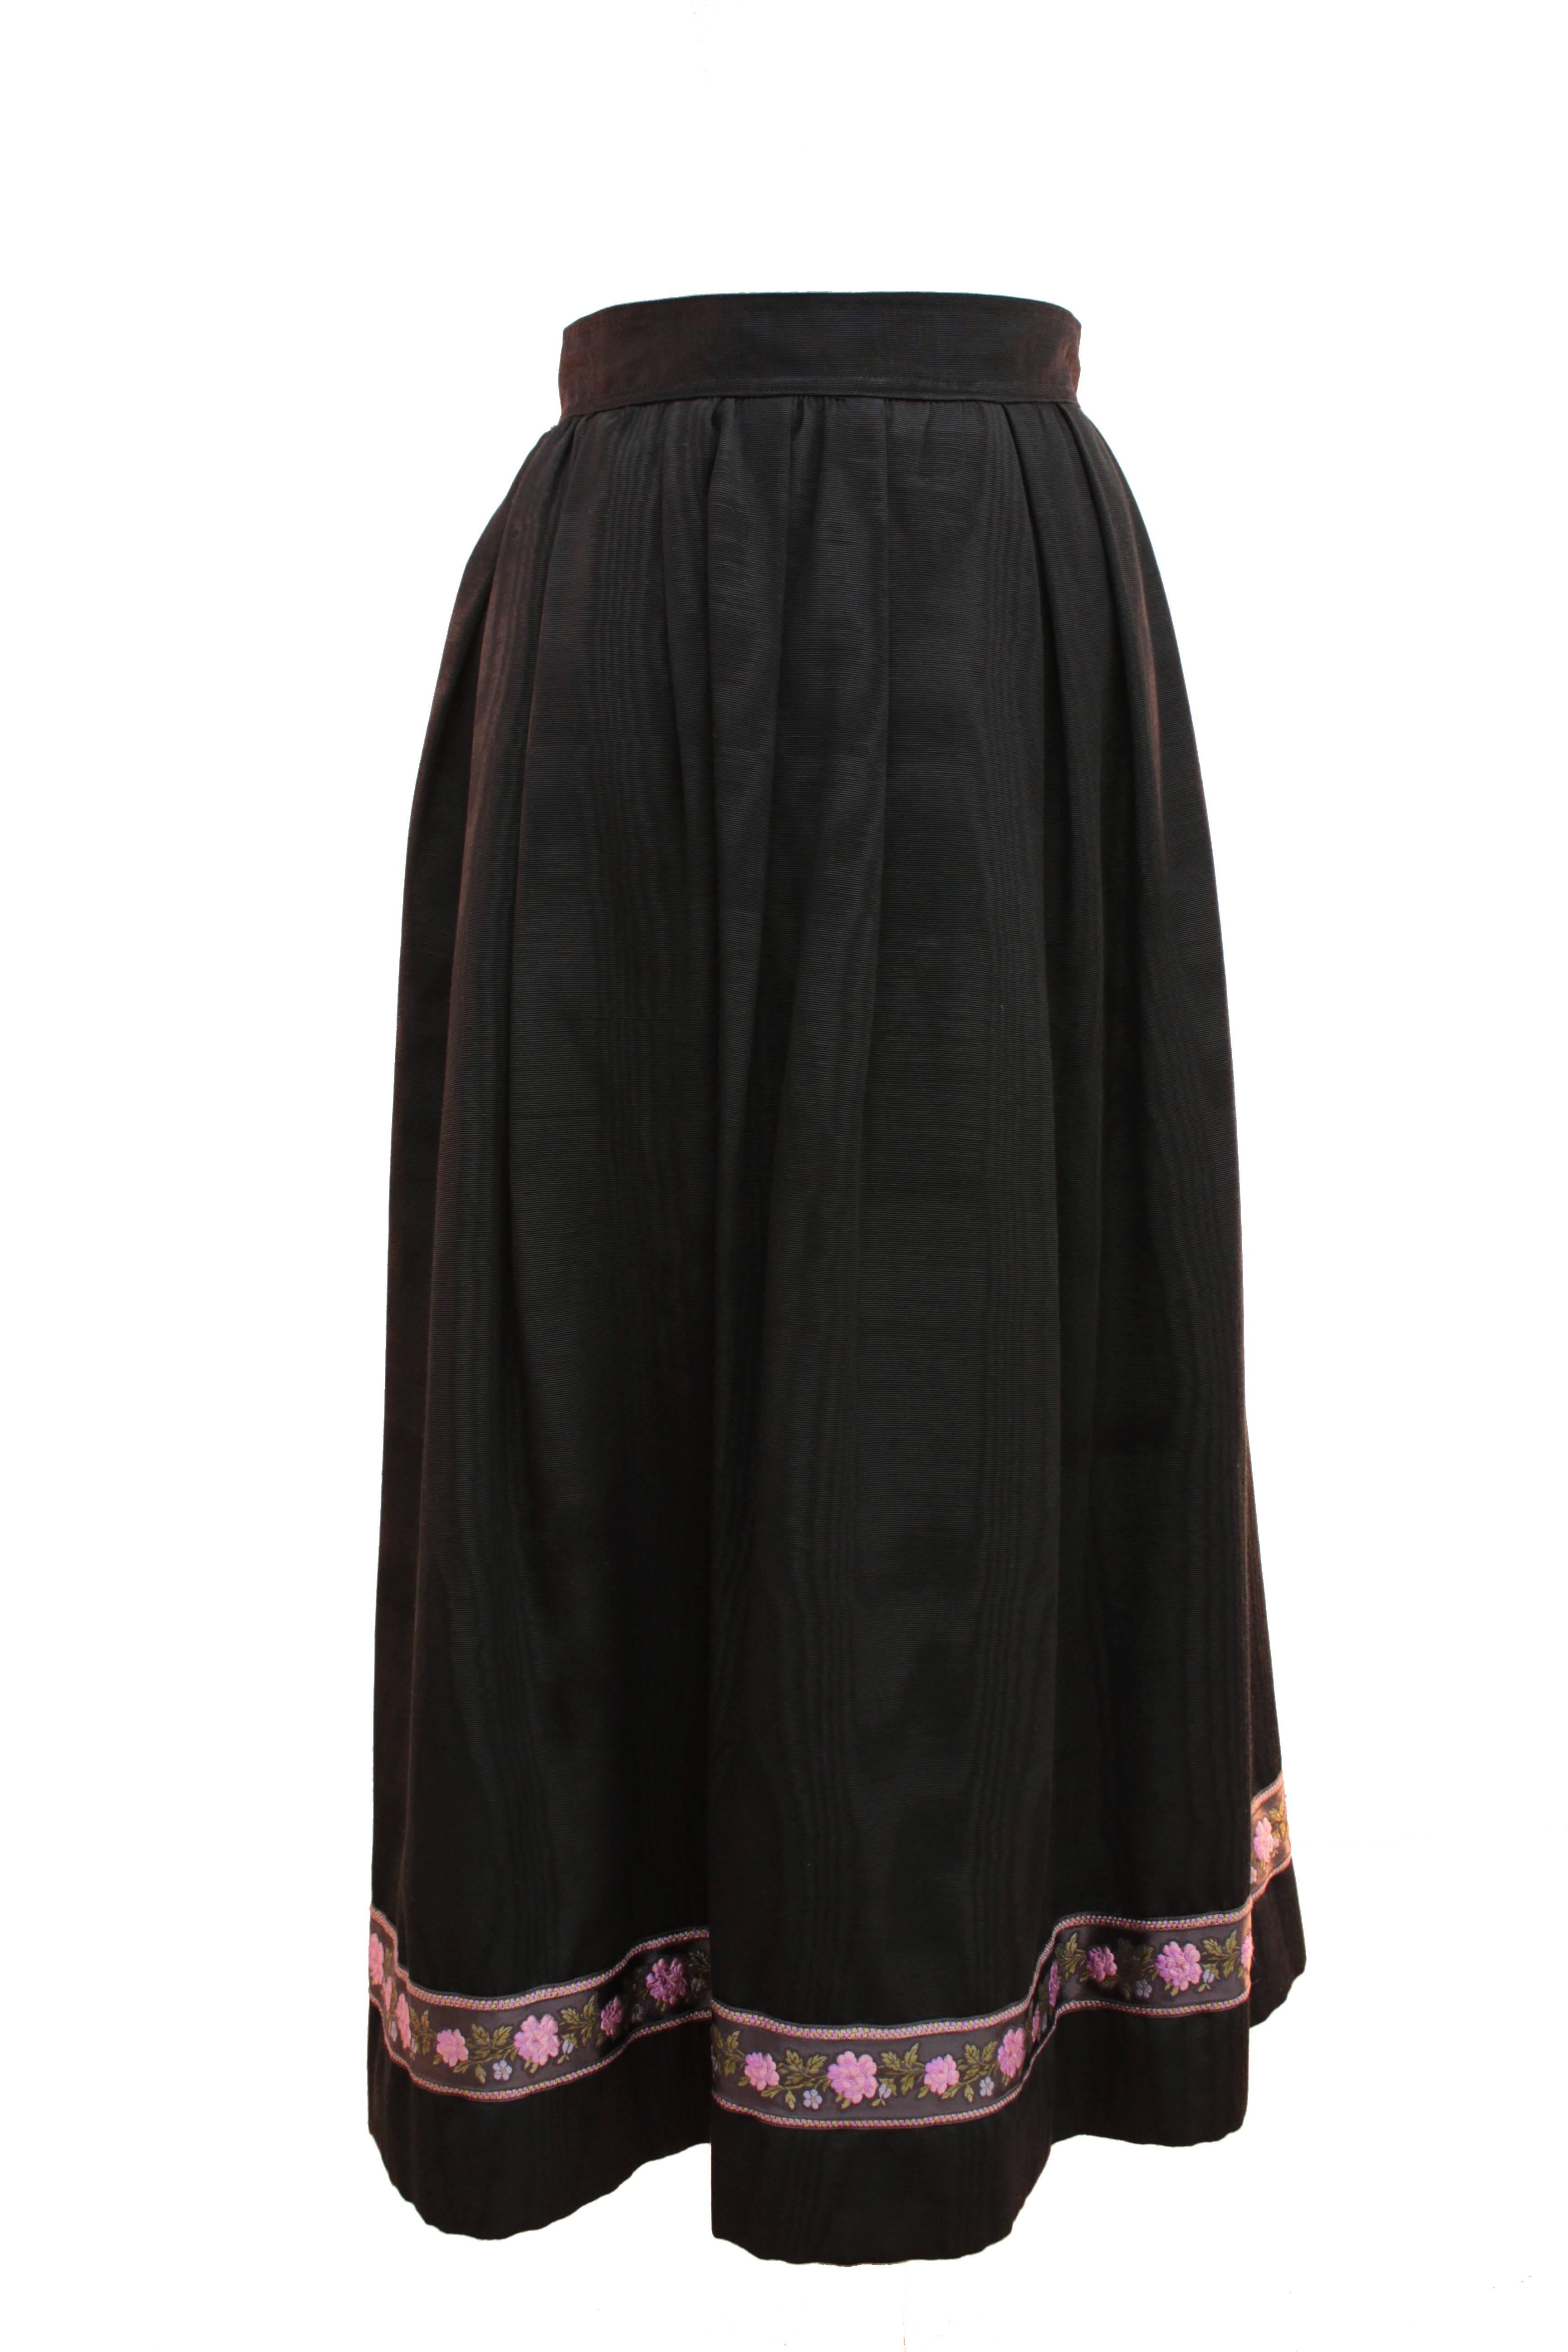 Yves Saint Laurent Silk Skirt Black Moire Embroidered Hem Russian Peasant 70s 1